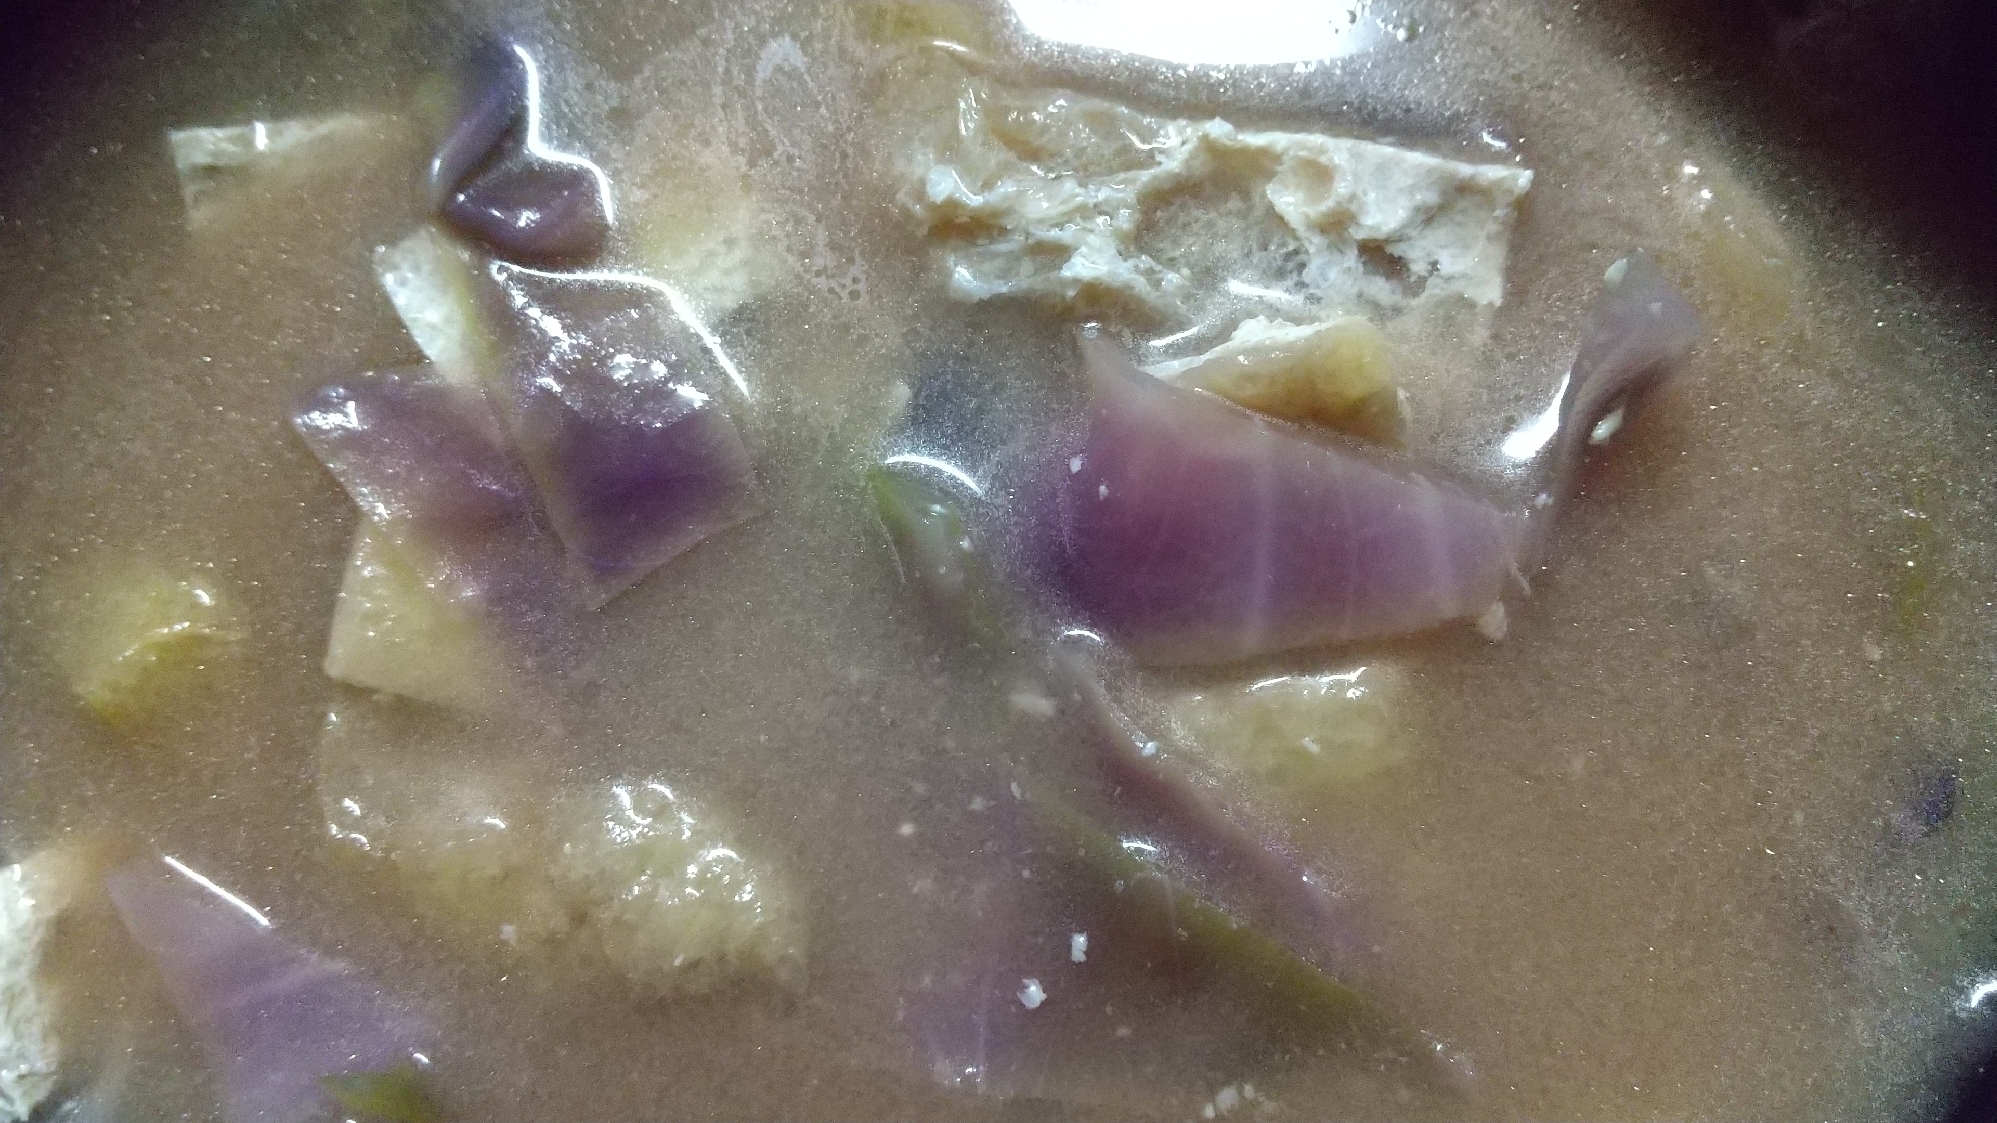 紫キャベツの味噌汁